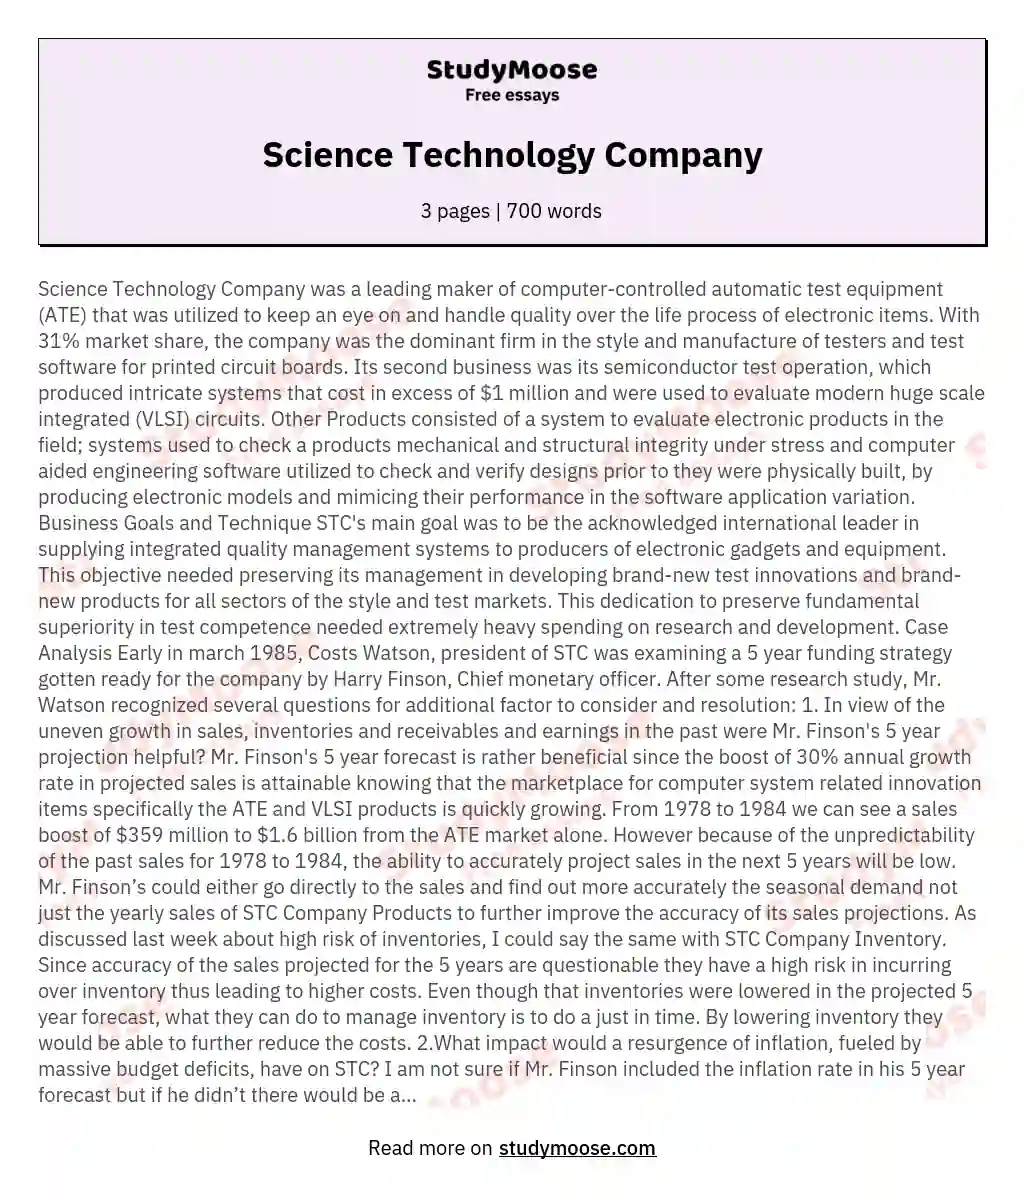 Science Technology Company essay